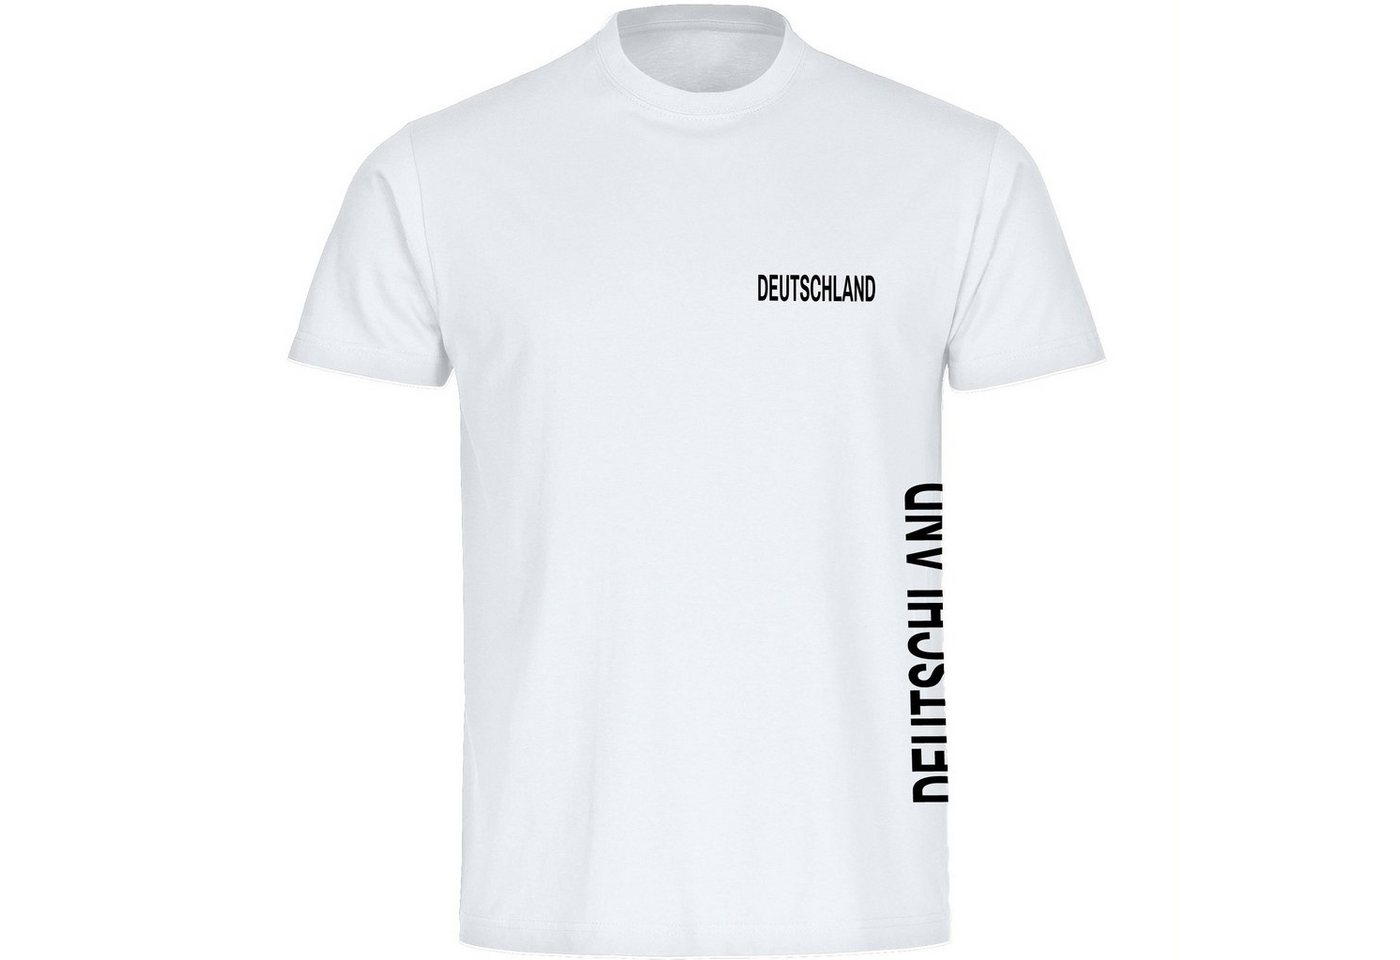 multifanshop T-Shirt Herren Deutschland - Brust & Seite - Männer von multifanshop